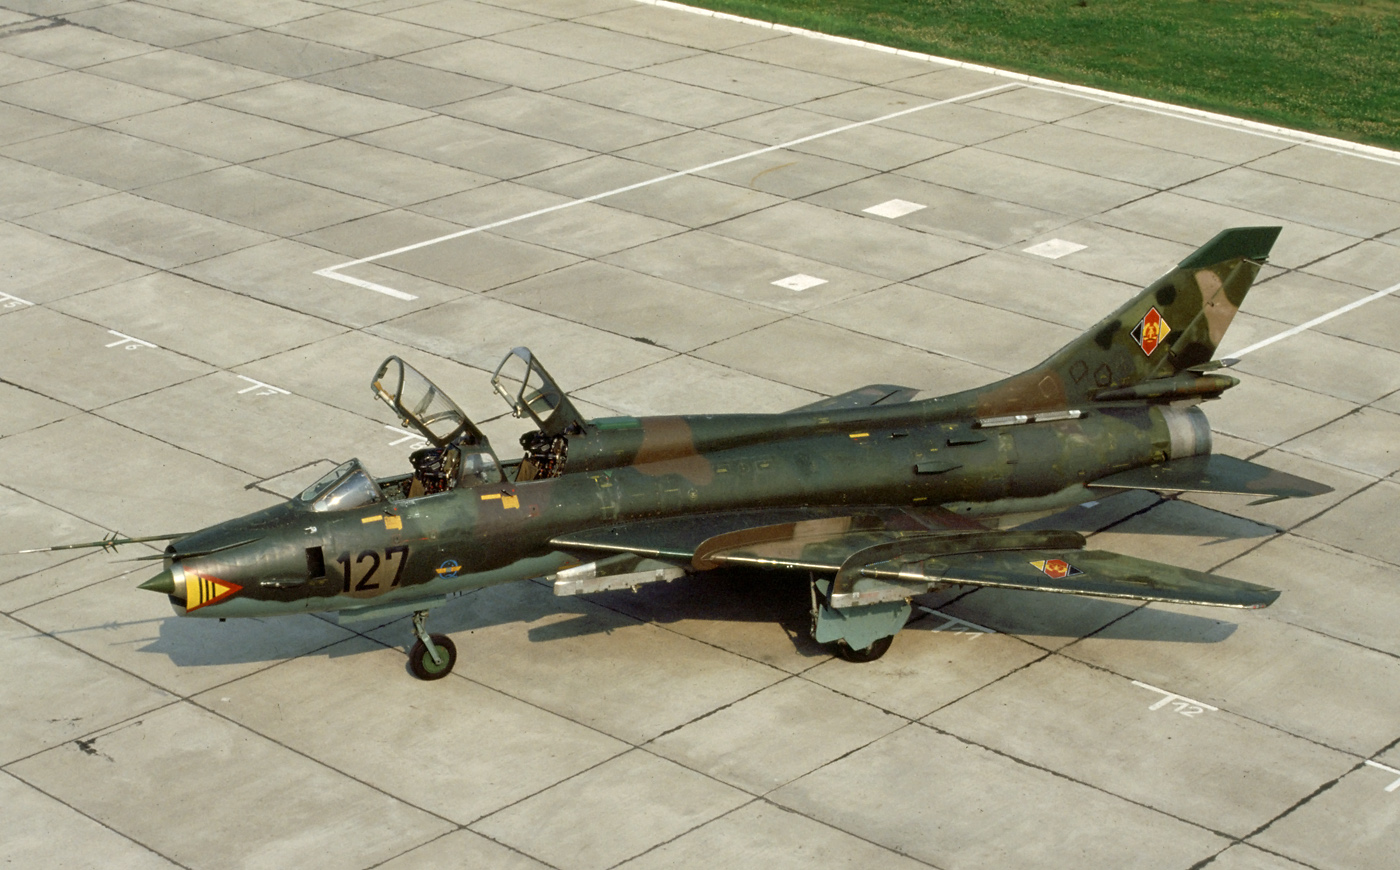 Velivolo Sukhoi Su-22 come parte del 1° Reggimento di Aviazione Tattica